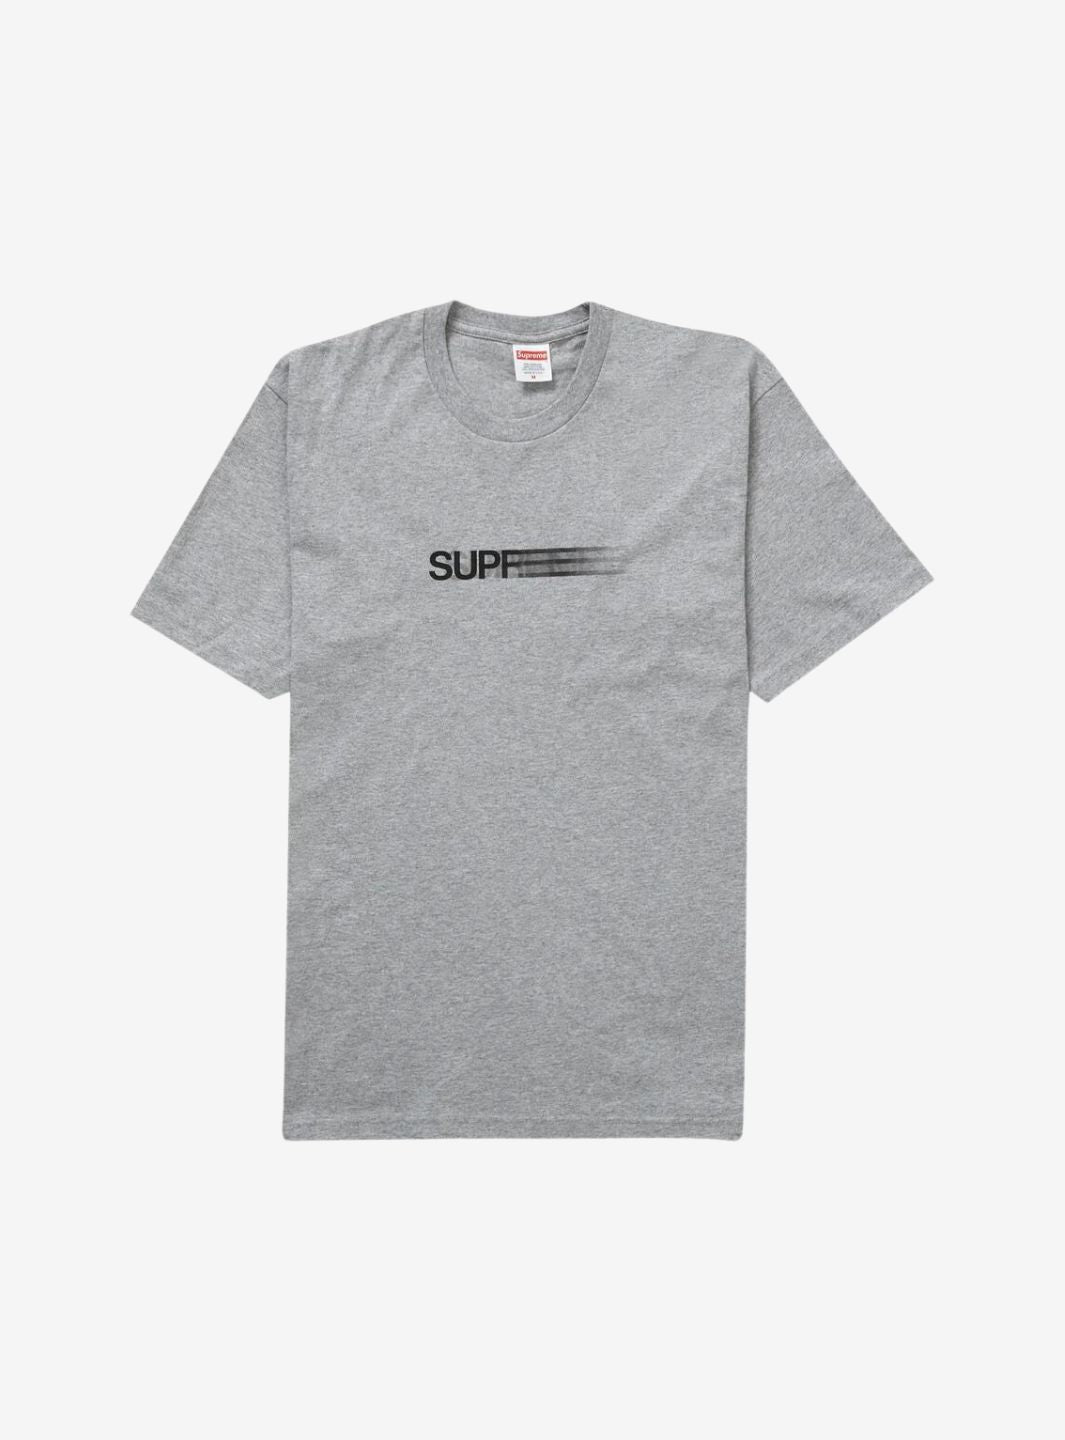 Supreme T Shirt Tiffany Box Logo